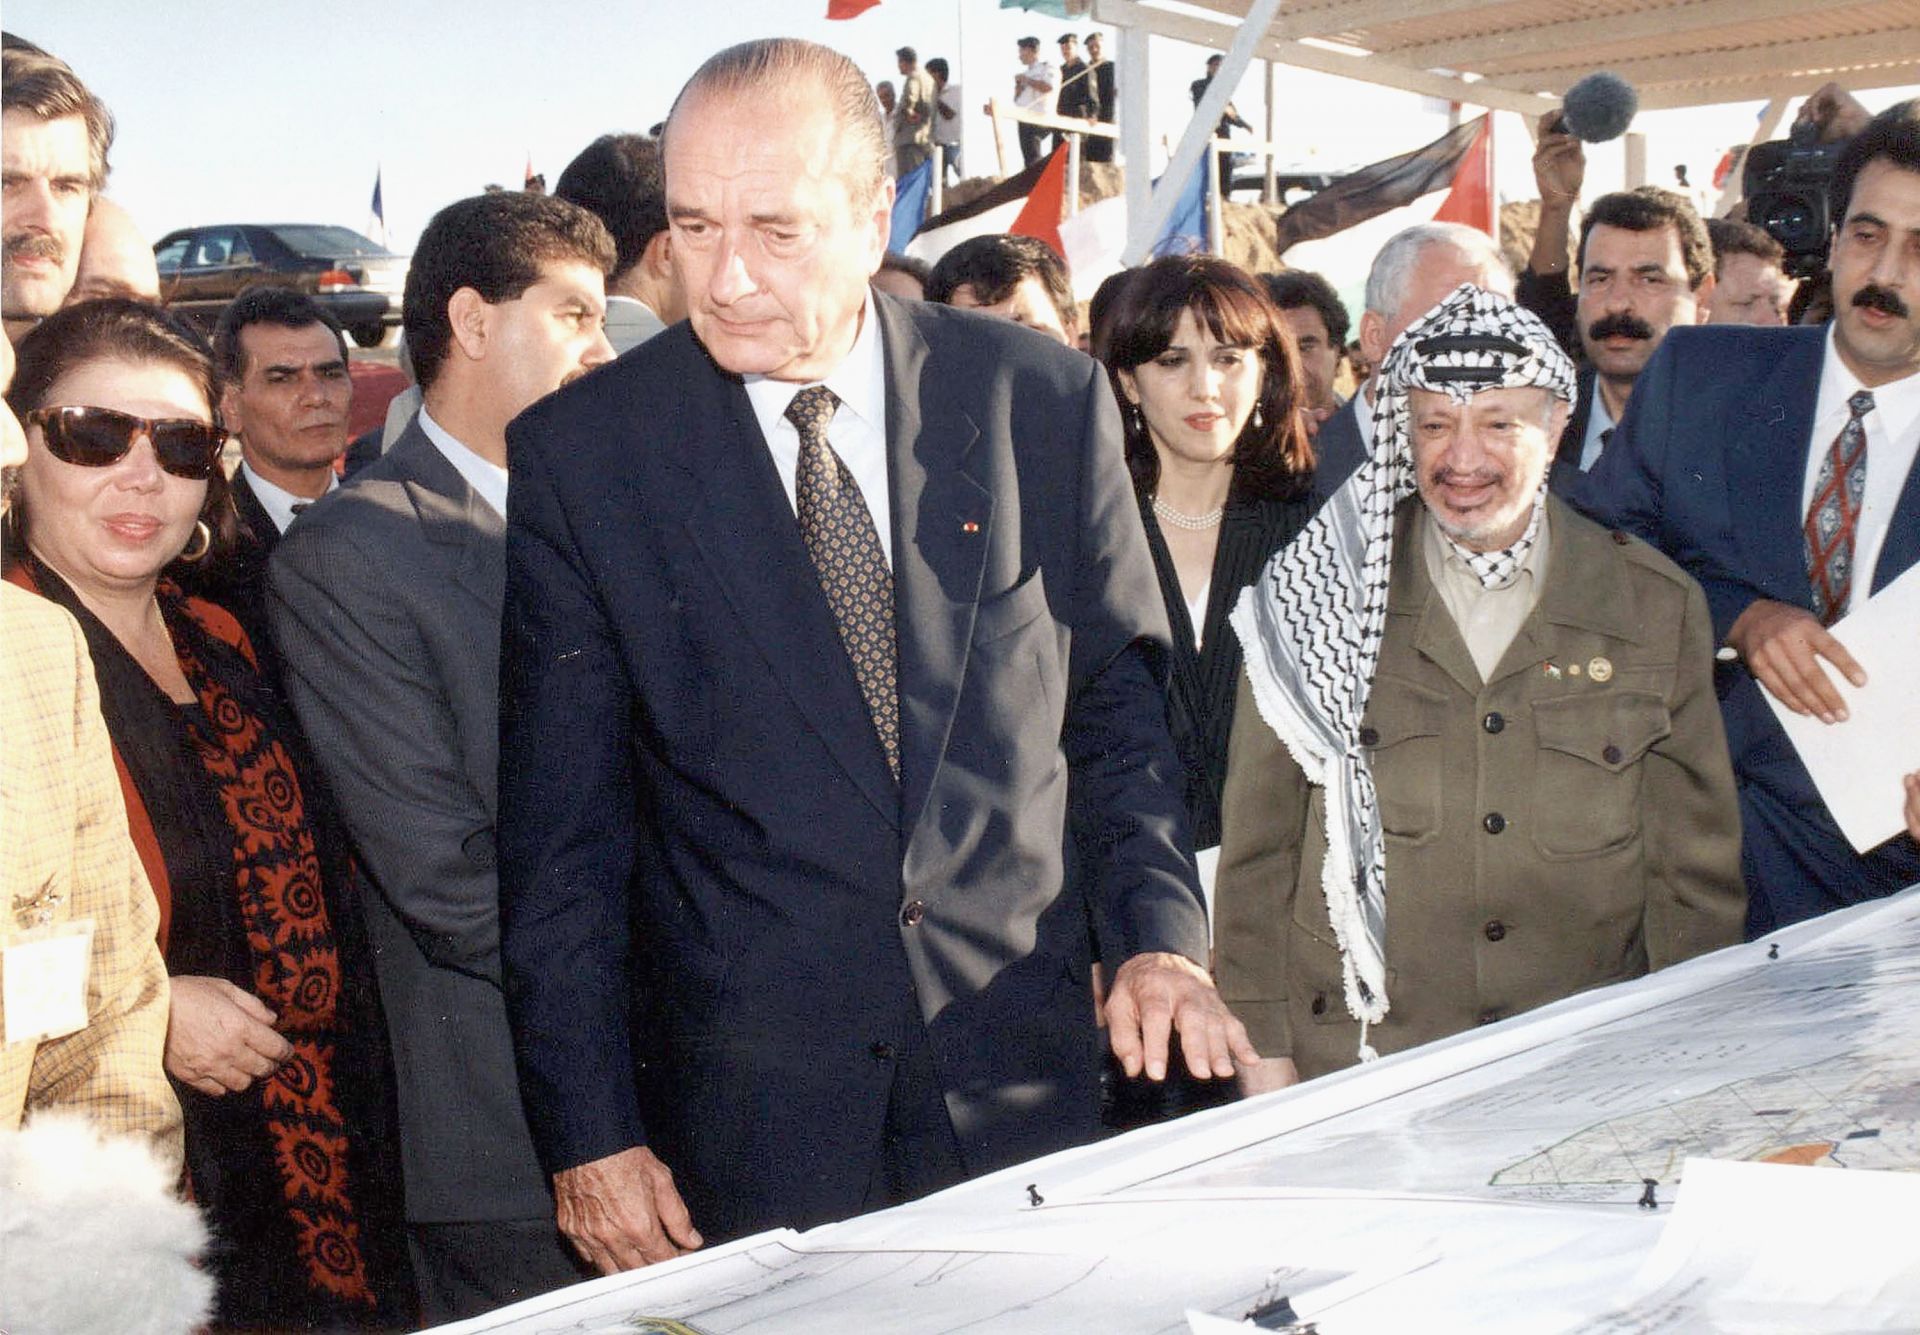 През 90-те години на миналия век Жак Ширак изгражда близки контакти с палестинския лидер Ясер Арафат, а това го превръща в герой за мнозина араби